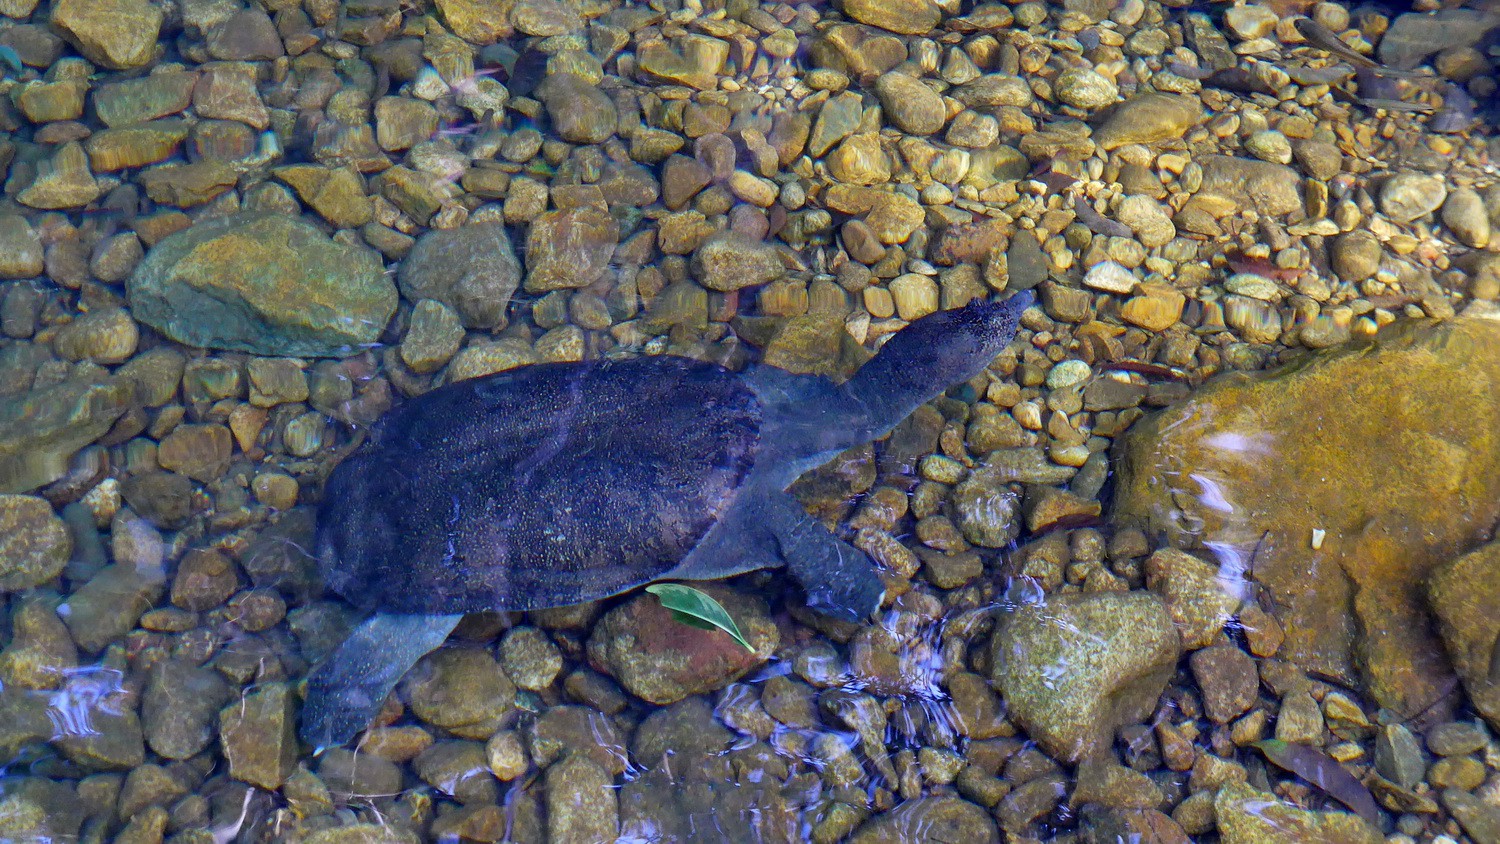 Turtle in the water of Klong Plu